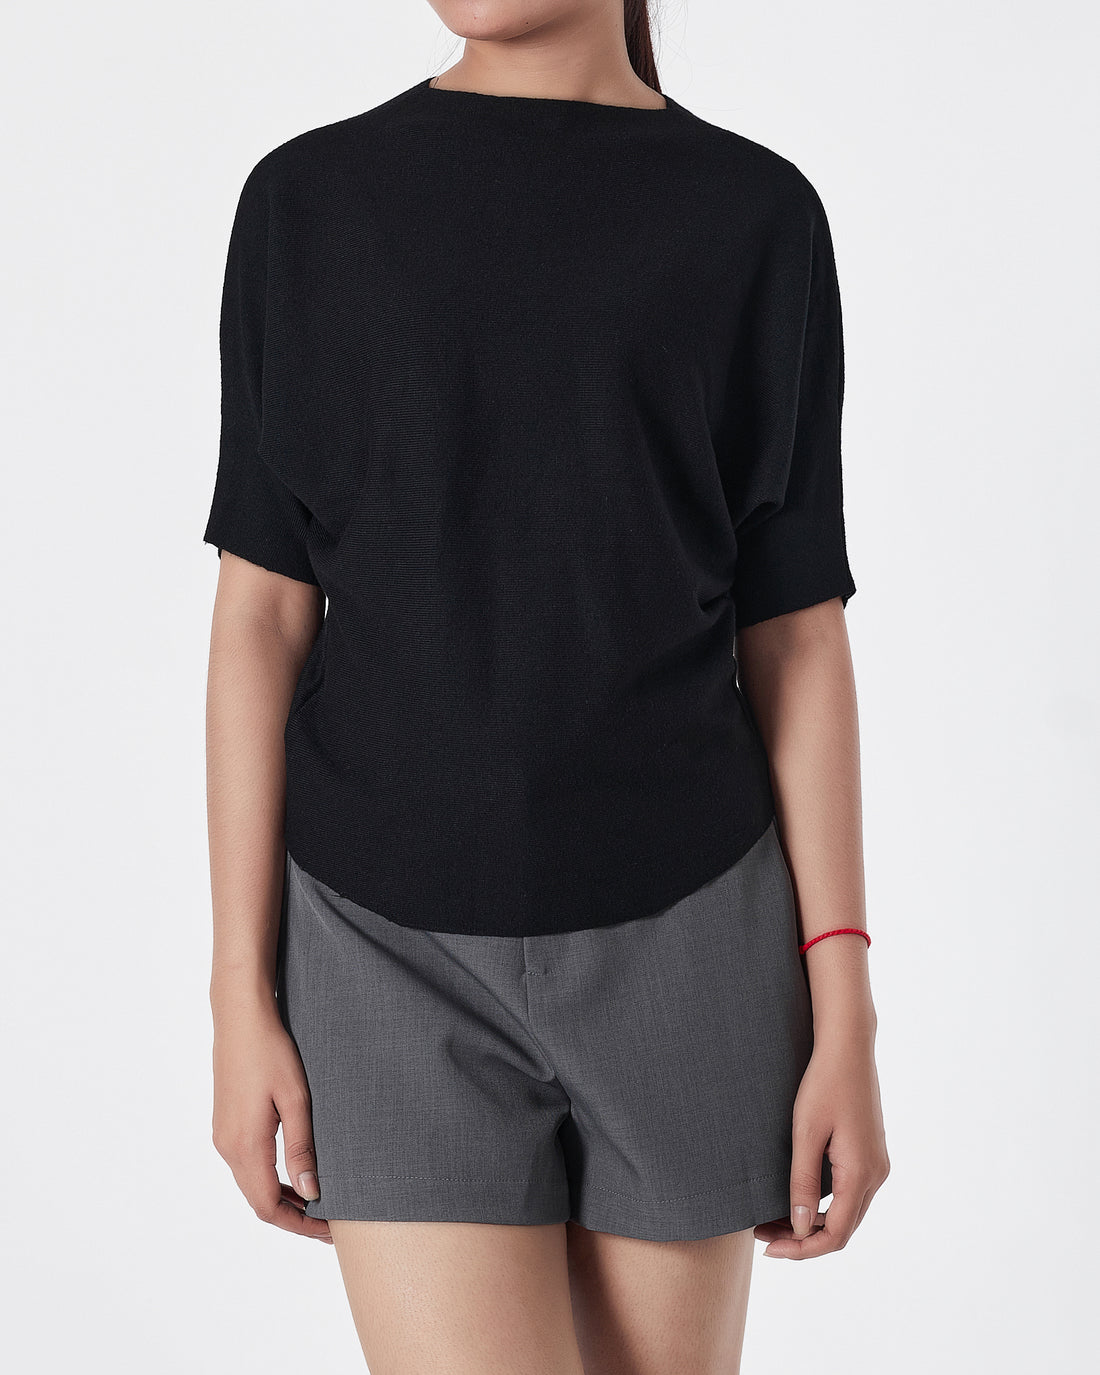 Plain Color Soft Knit Lady Black T-Shirt 14.90